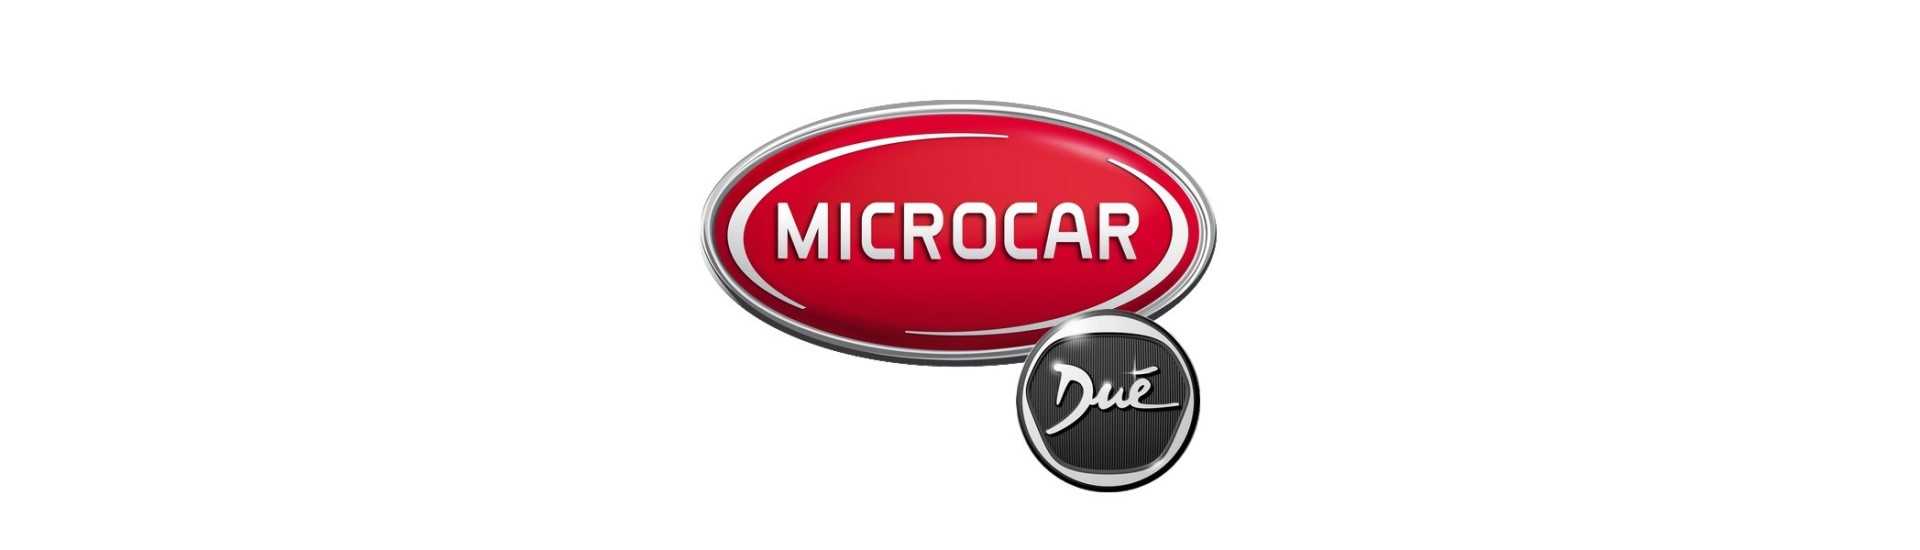 Motor à prova de som no melhor preço carro sem uma permissão Microcar Dué